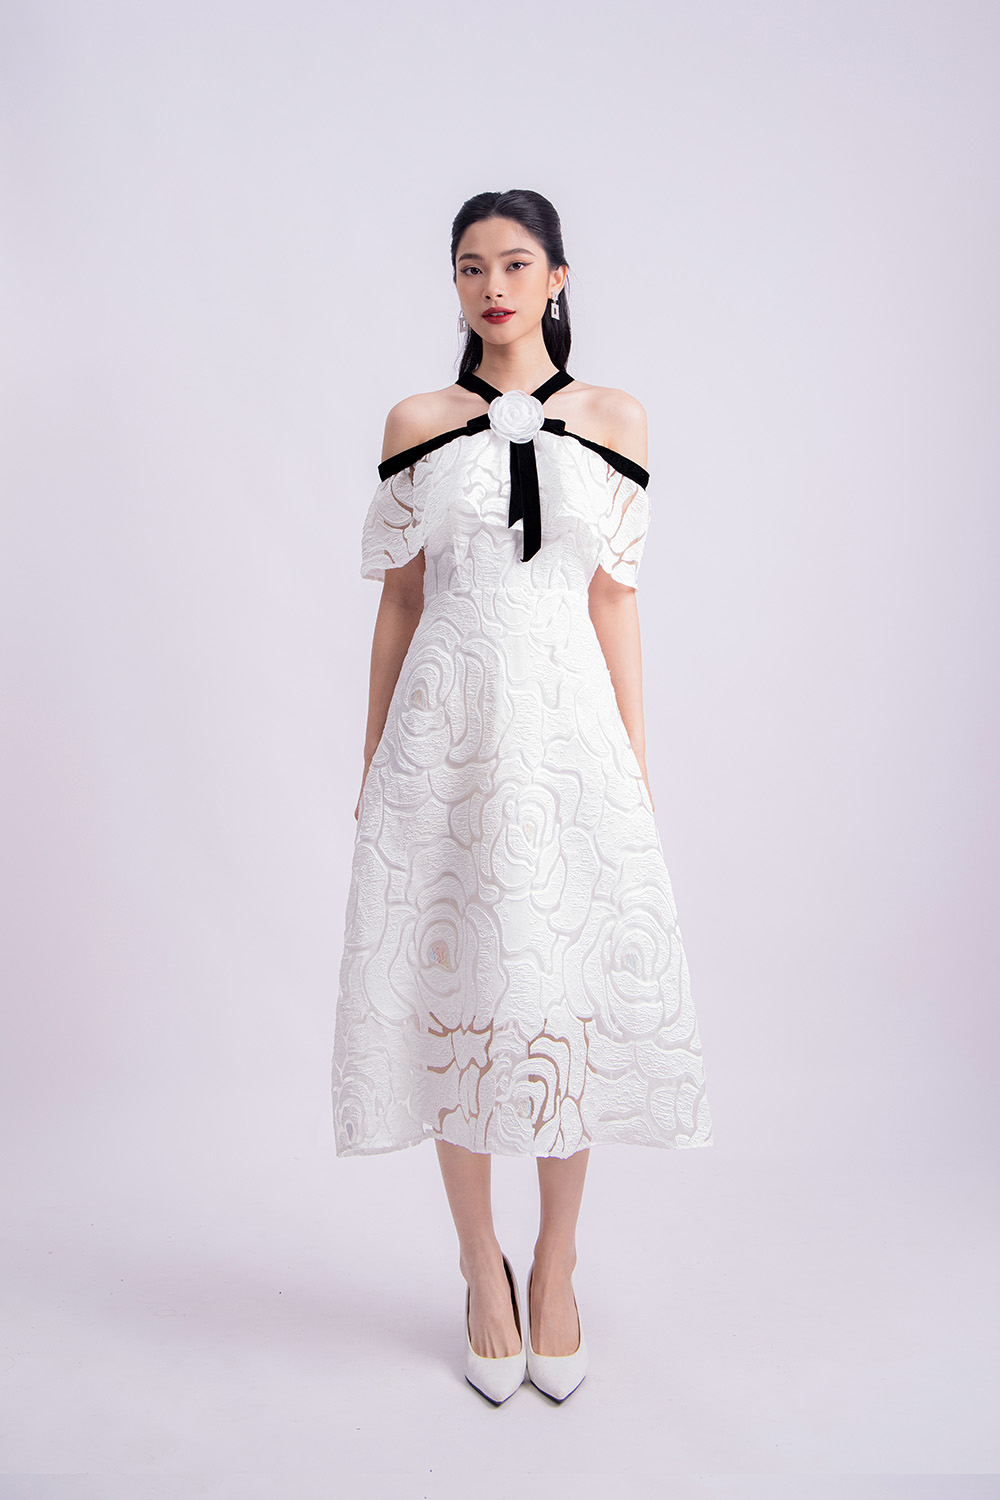 Đầm dạ hội thiết kế màu trắng trễ vai đính bông xẻ tà